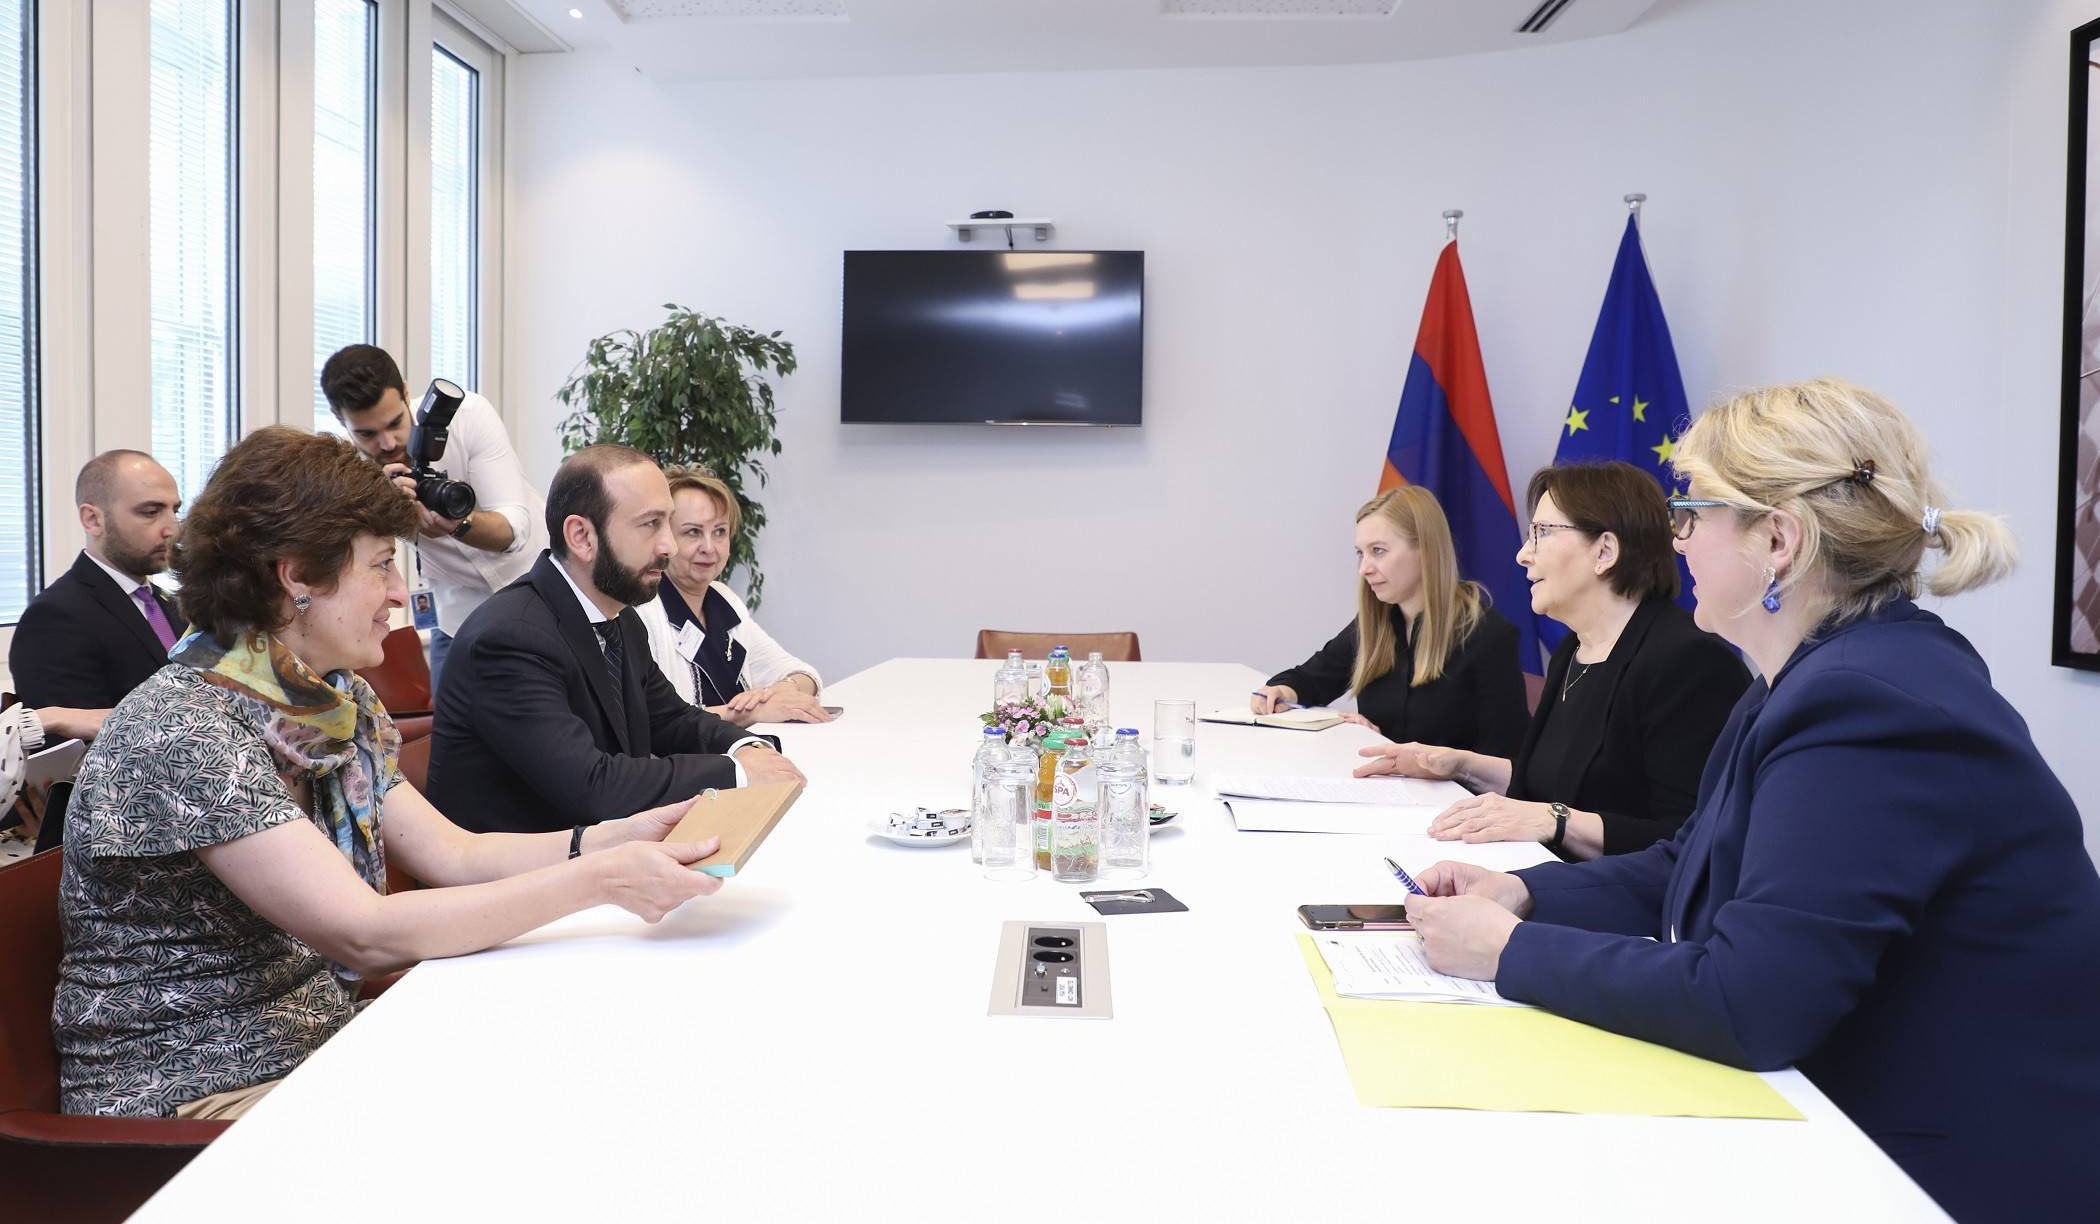 Мирзоян представил вице-председателя Европейского парламента позицию Армении по шагам, направленным на установление мира и стабильности в регионе